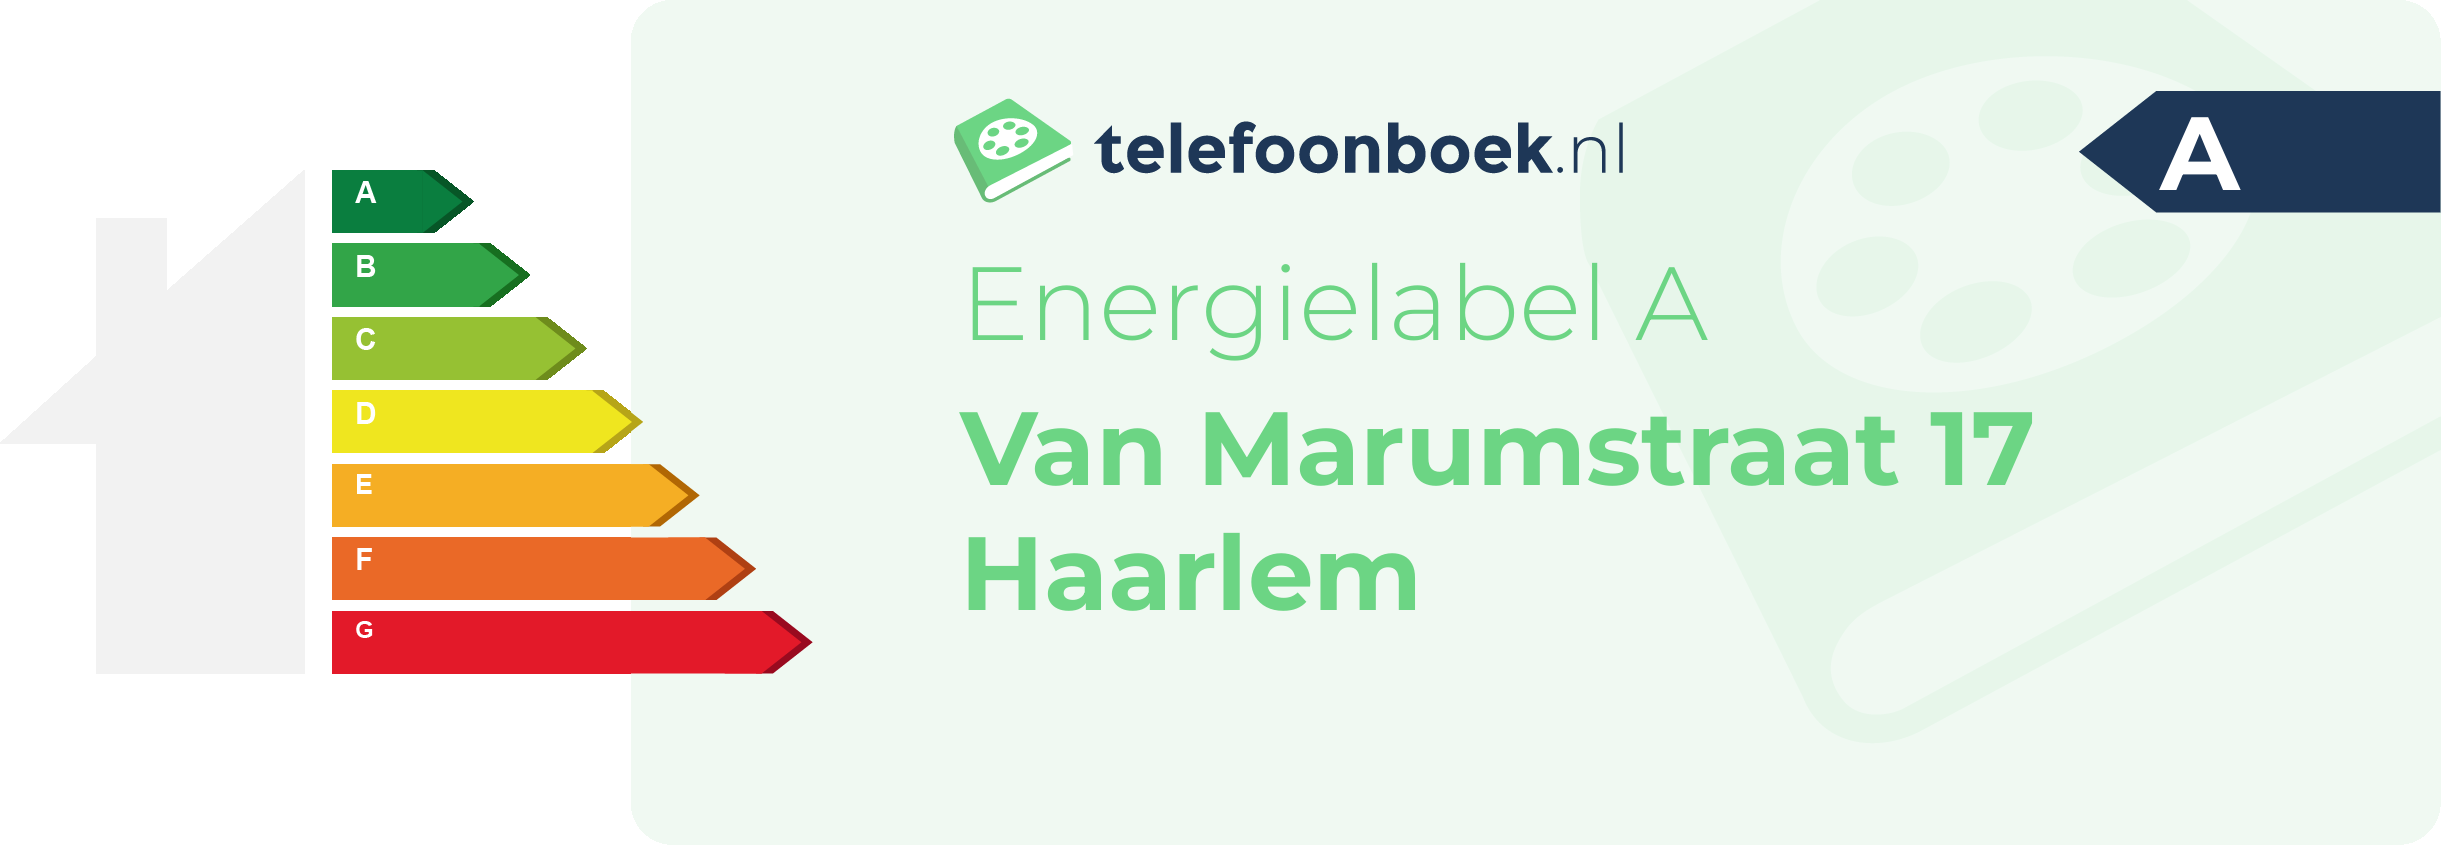 Energielabel Van Marumstraat 17 Haarlem